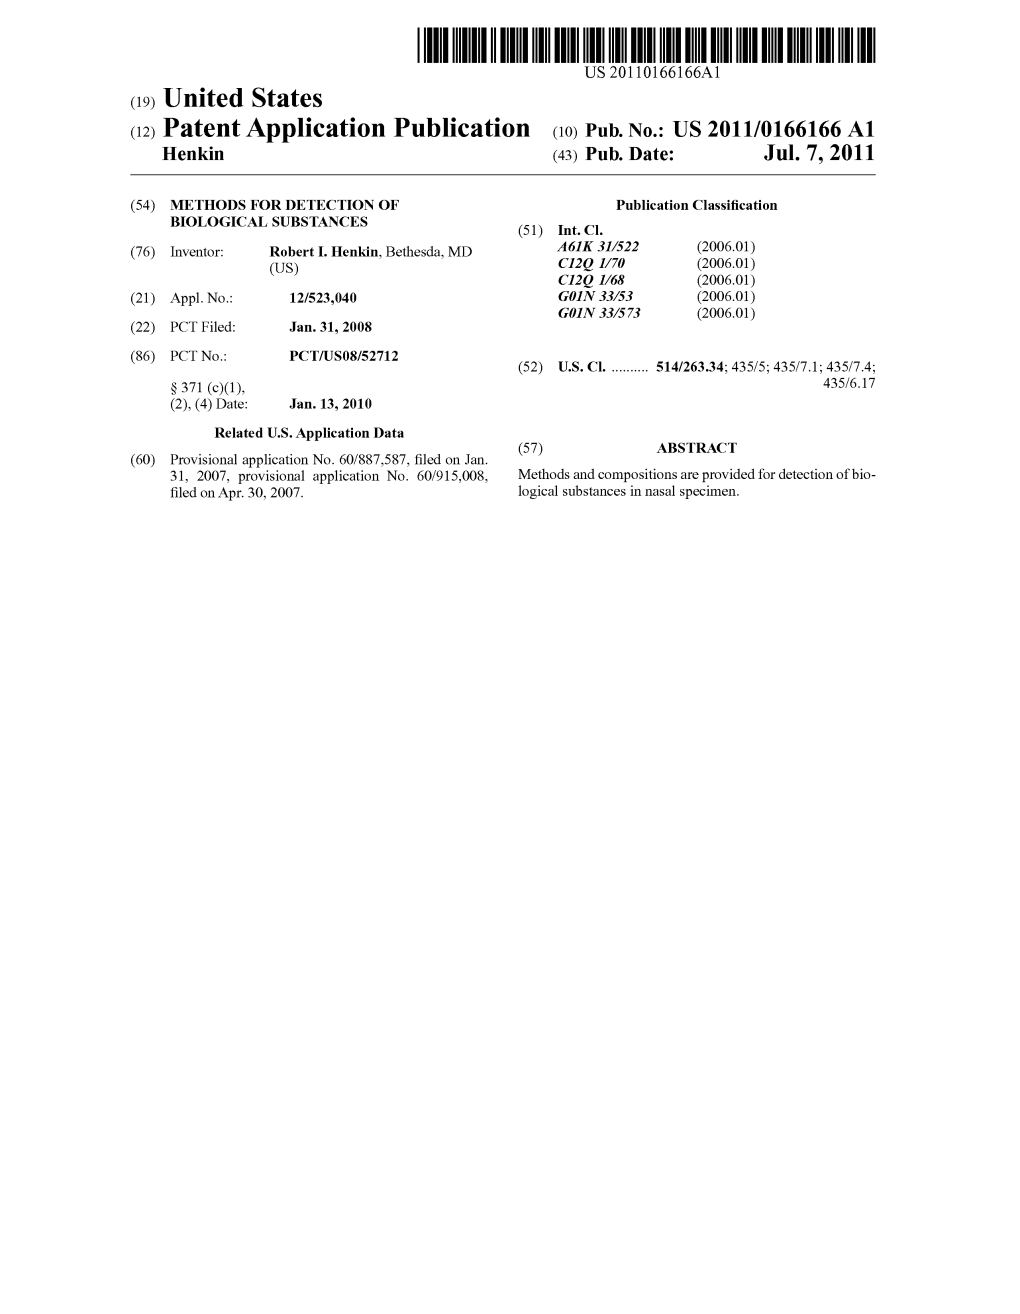 (12) Patent Application Publication (10) Pub. No.: US 2011/0166166A1 Henkin (43) Pub